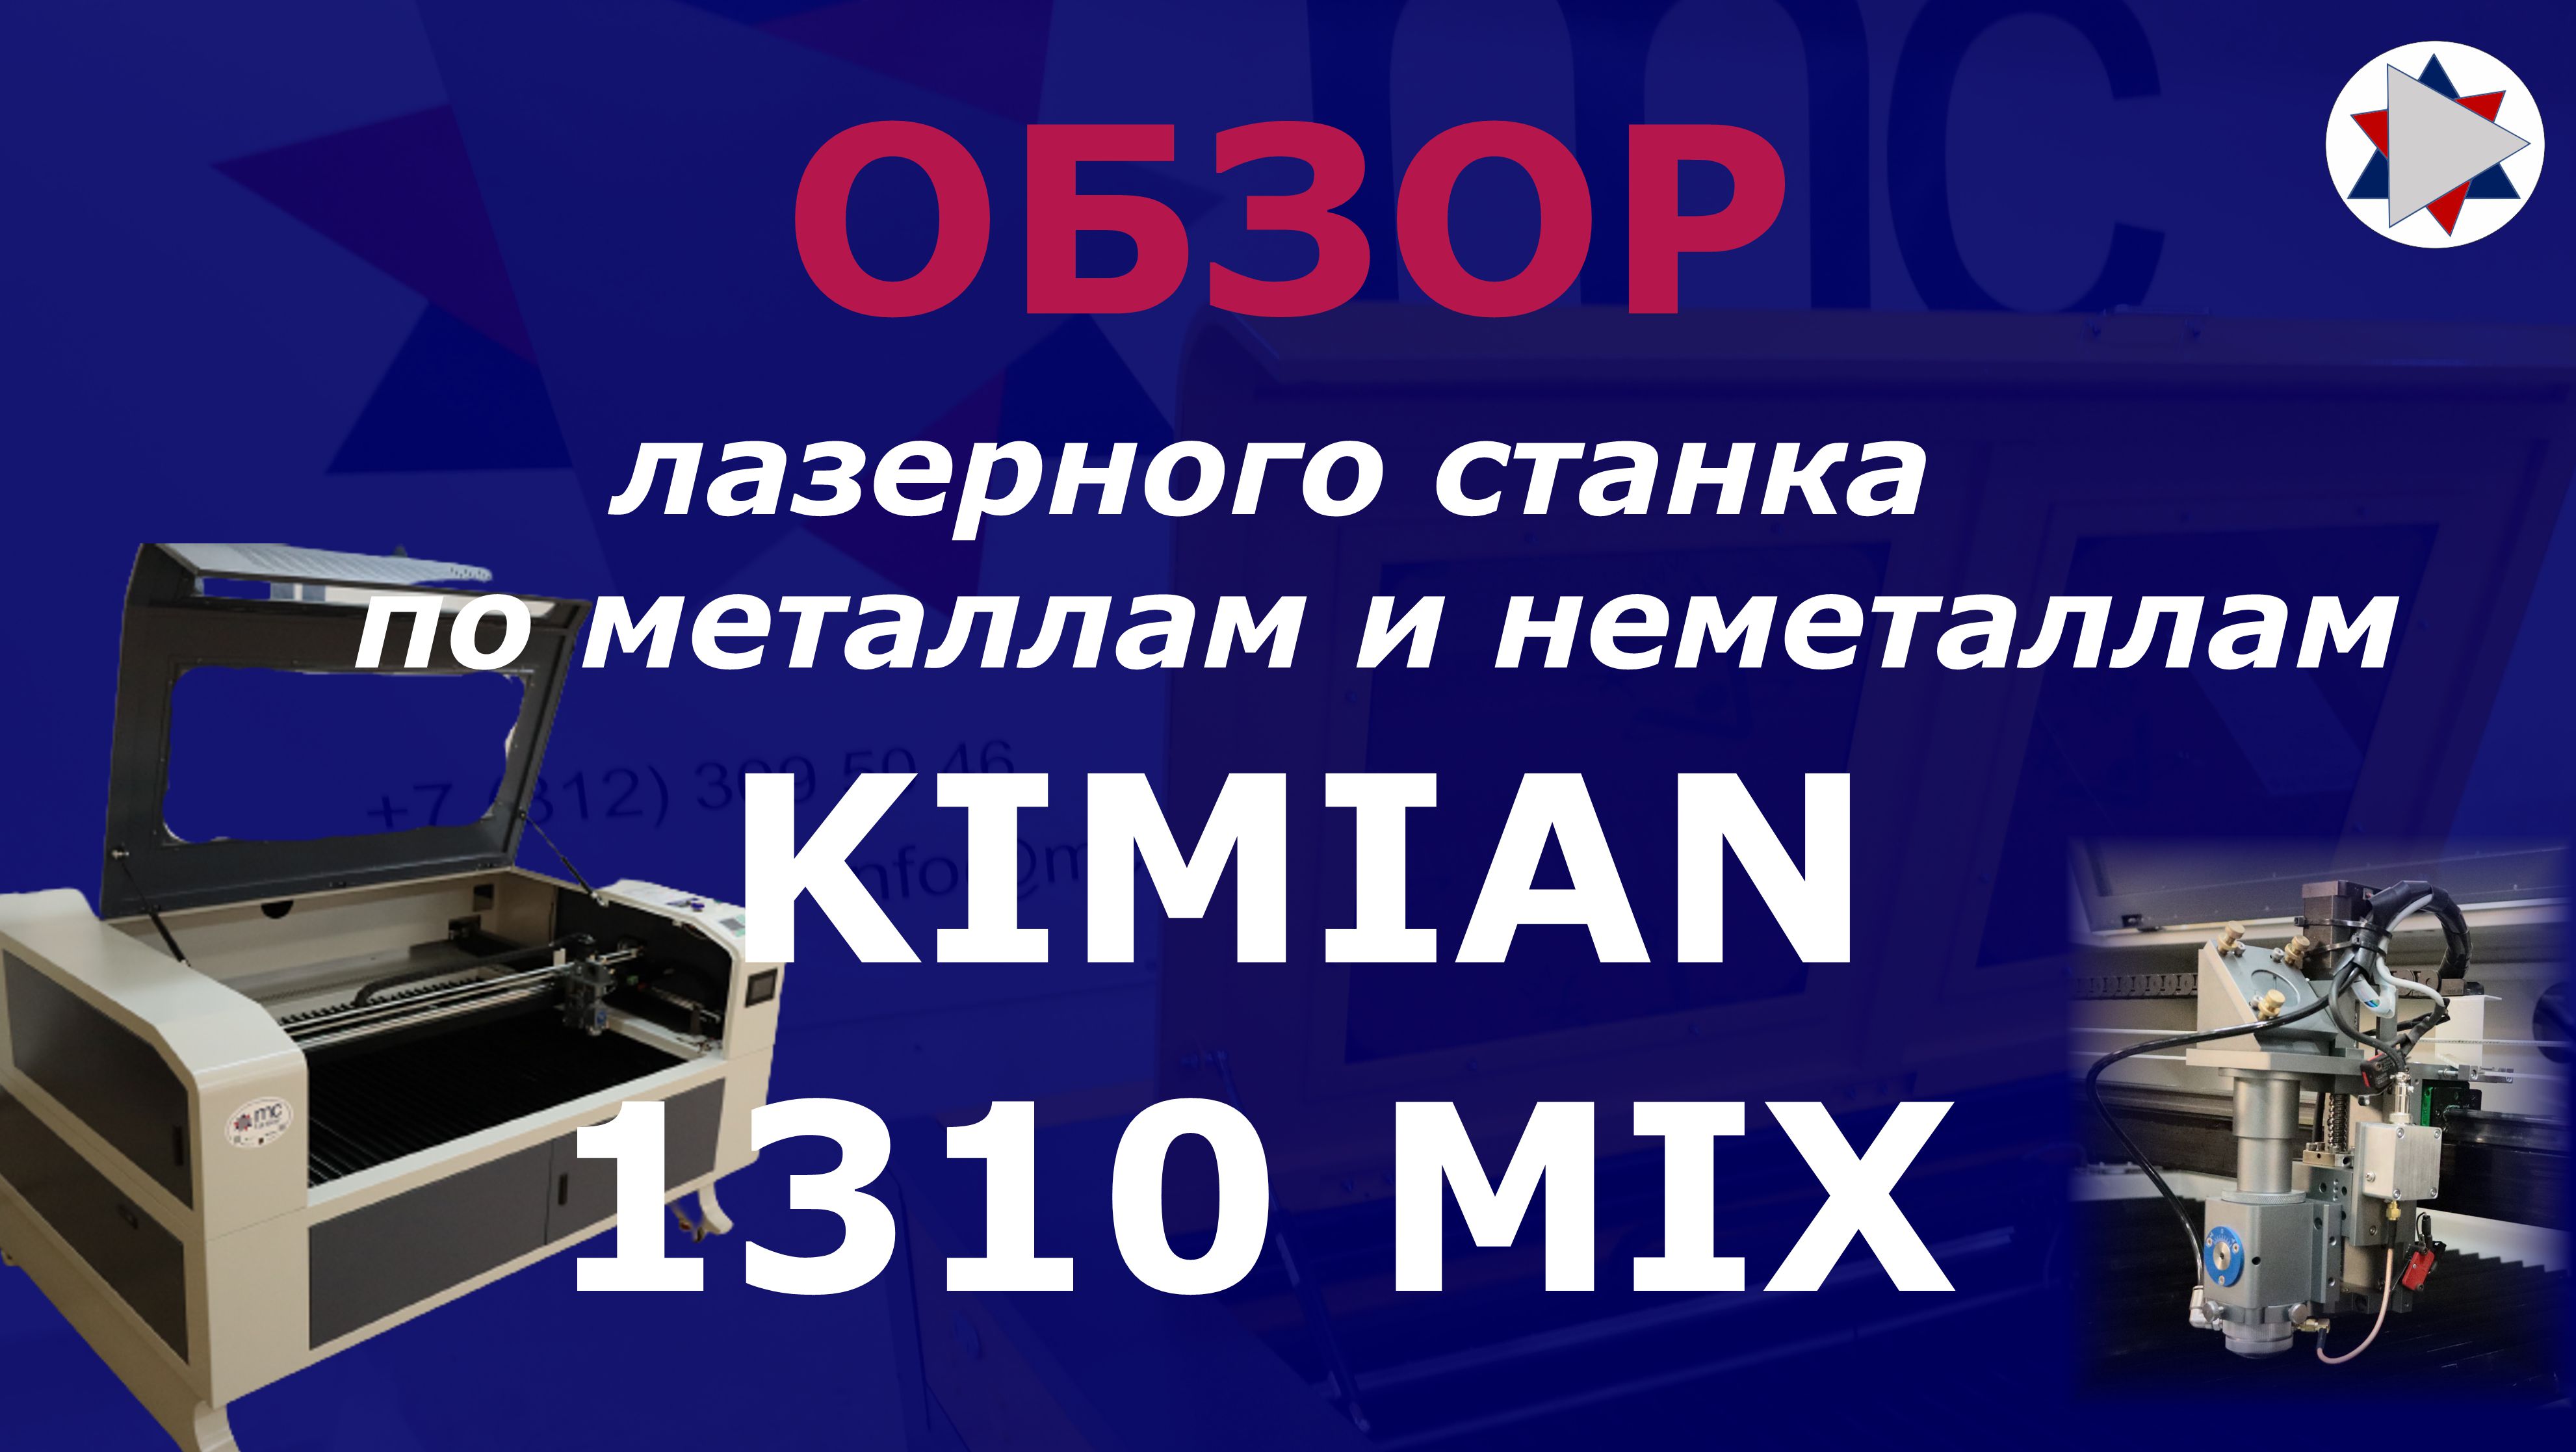 ✅ Обзор универсального лазерного станка Kimian 1310 mix